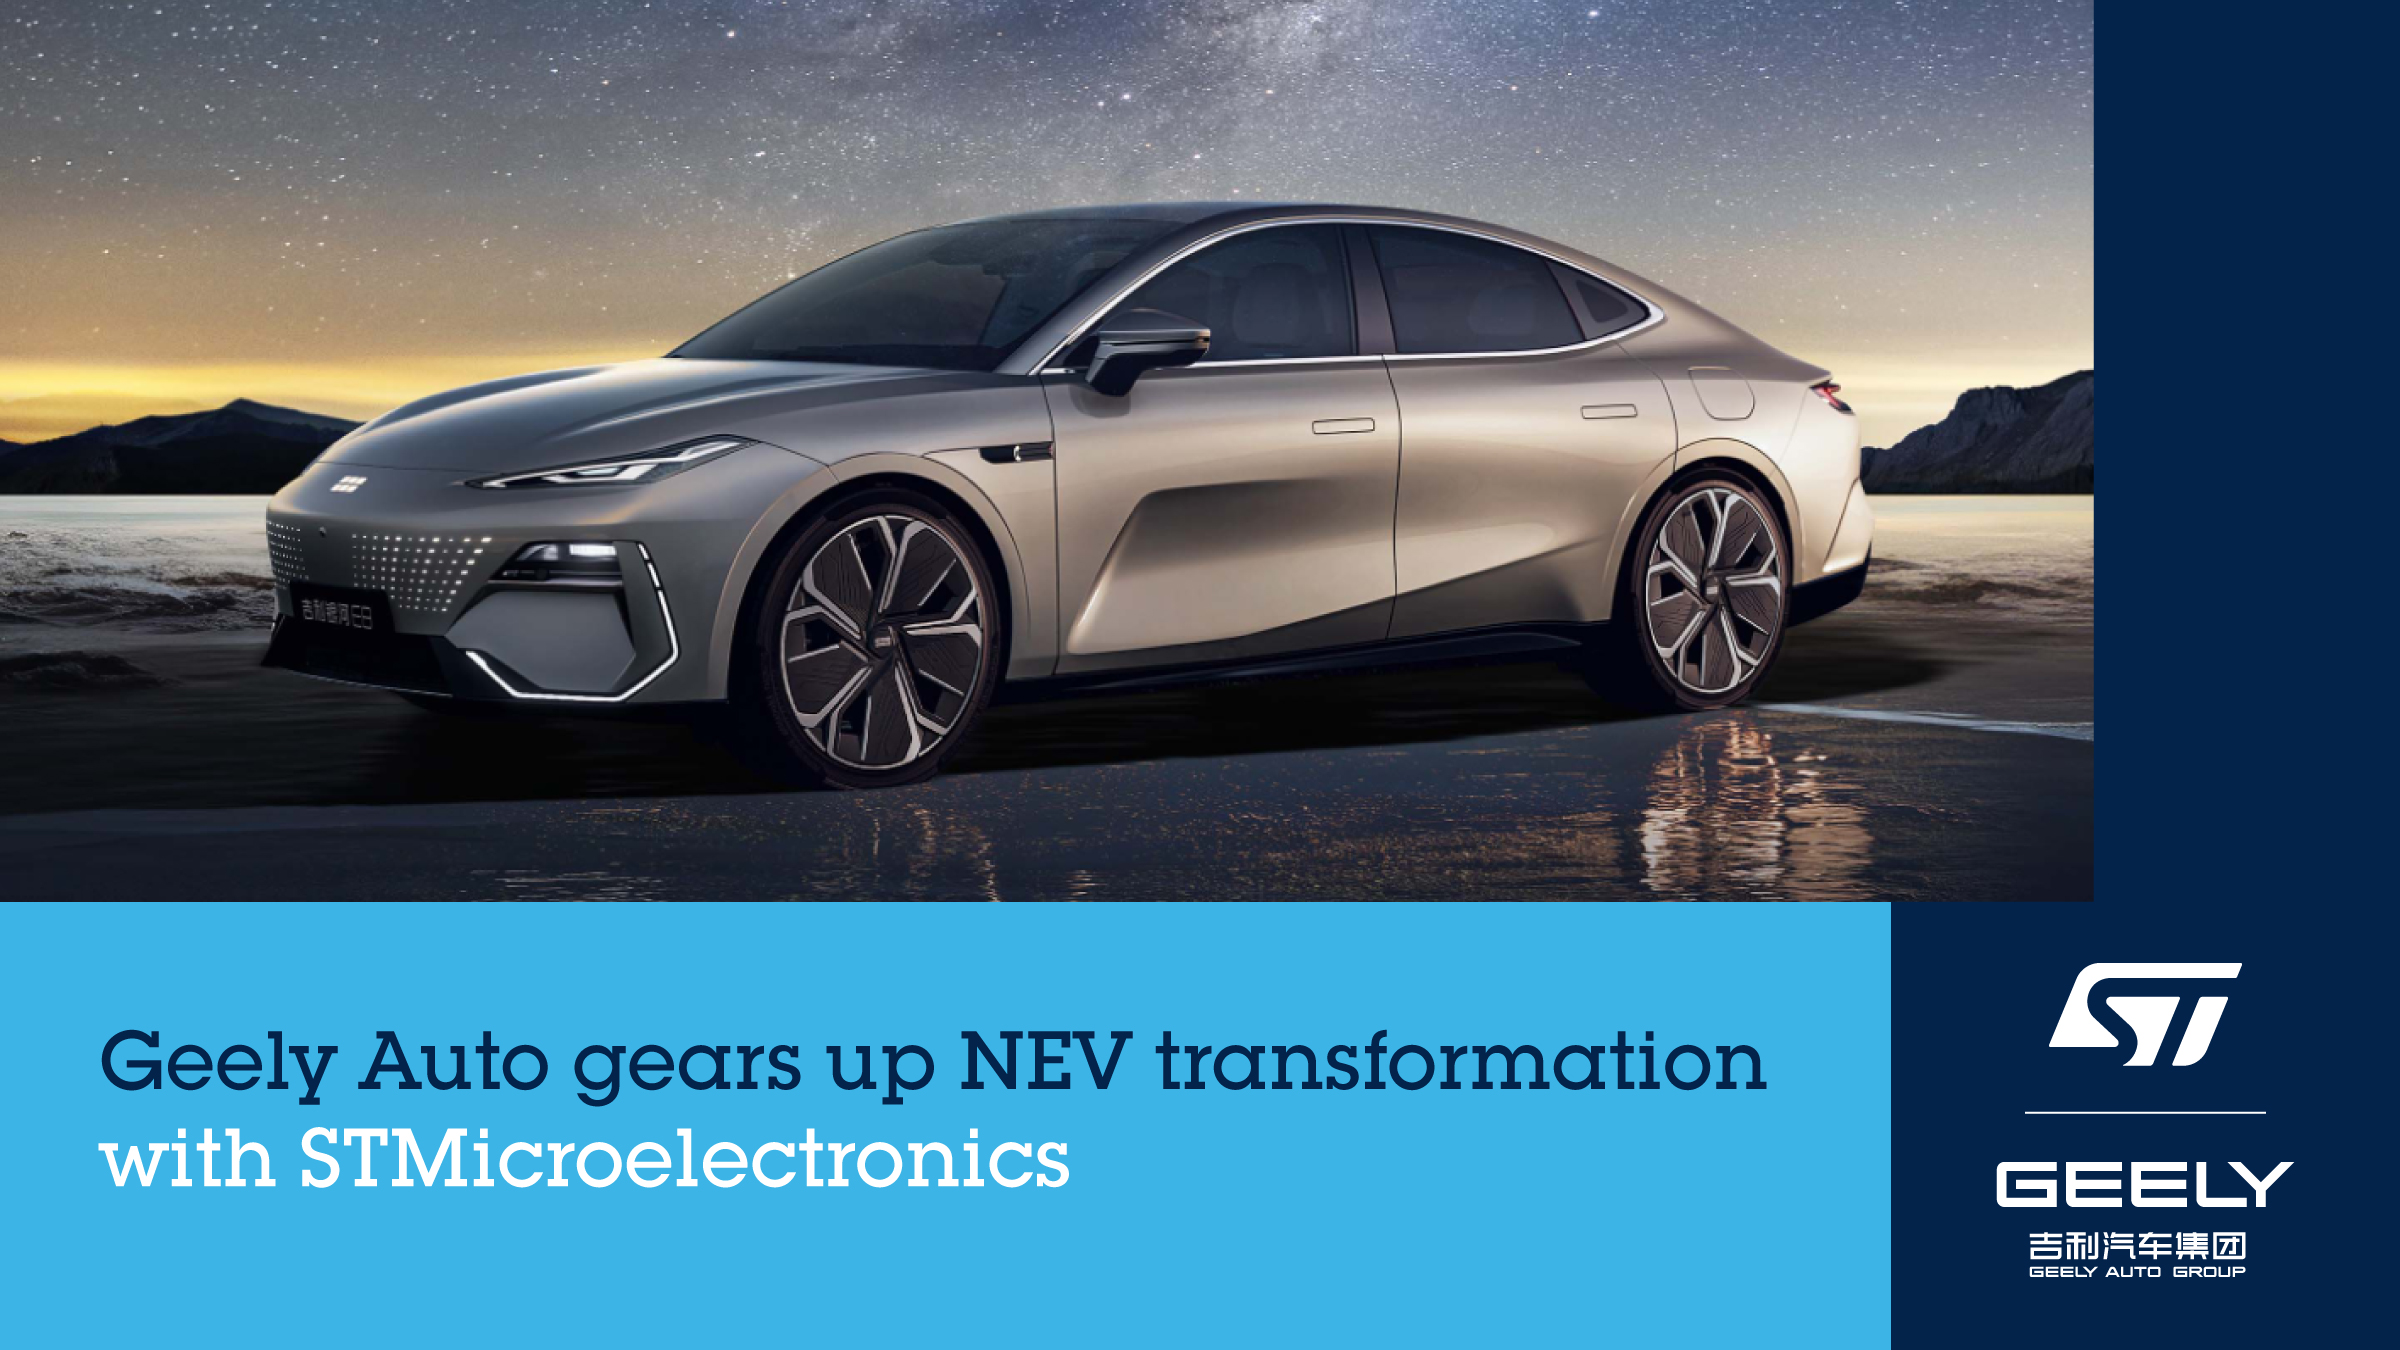 吉利汽车与意法半导体签署碳化硅长期供应协议，深化新能源汽车转型;成立创新联合实验室，推动双方创新合作